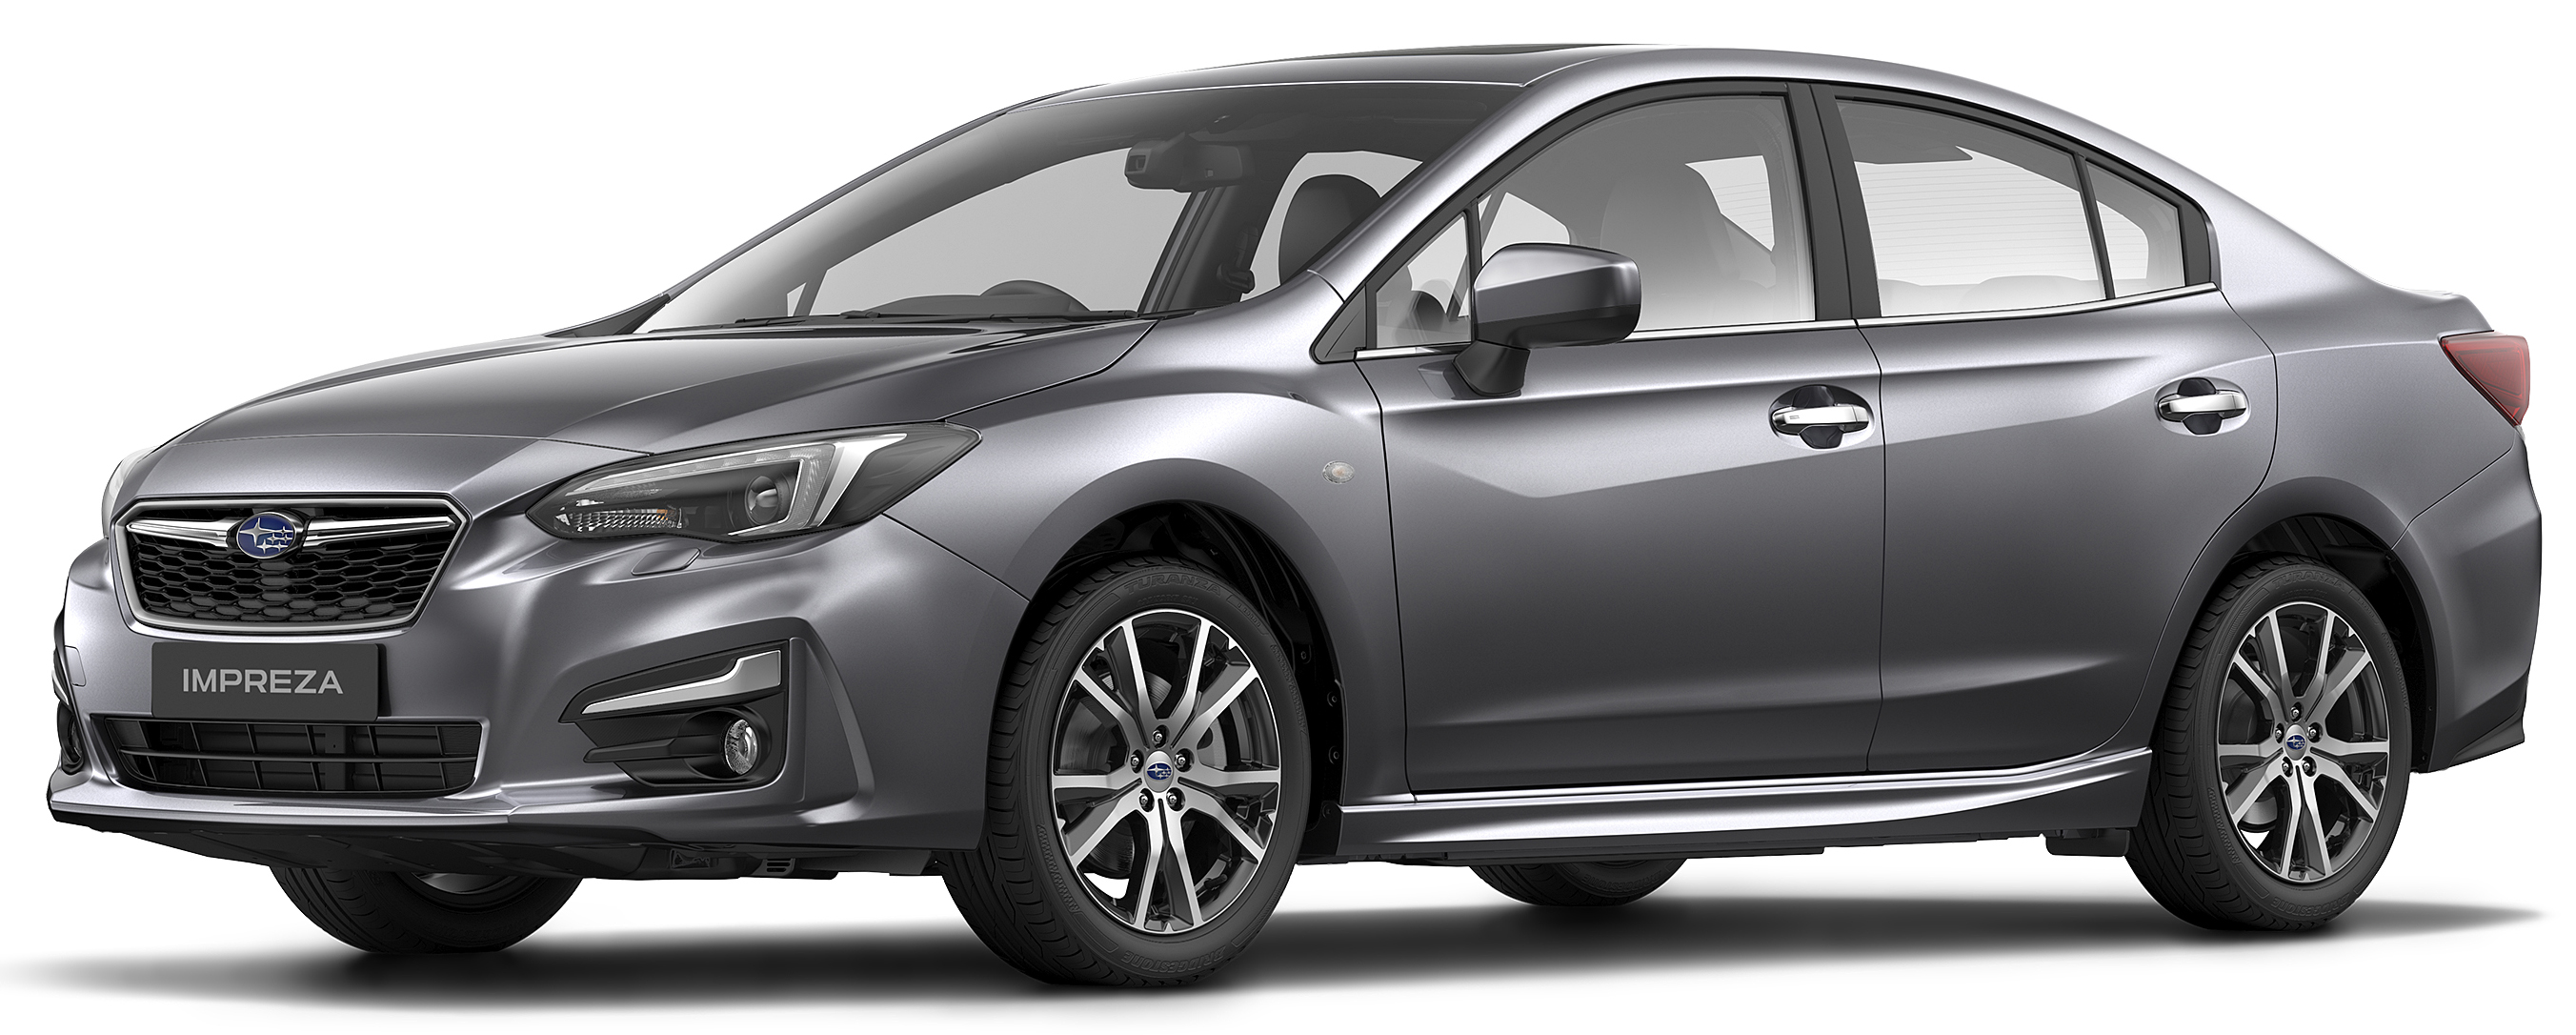 Subaru Impreza 2017 dilancarkan di Singapura sedan dan